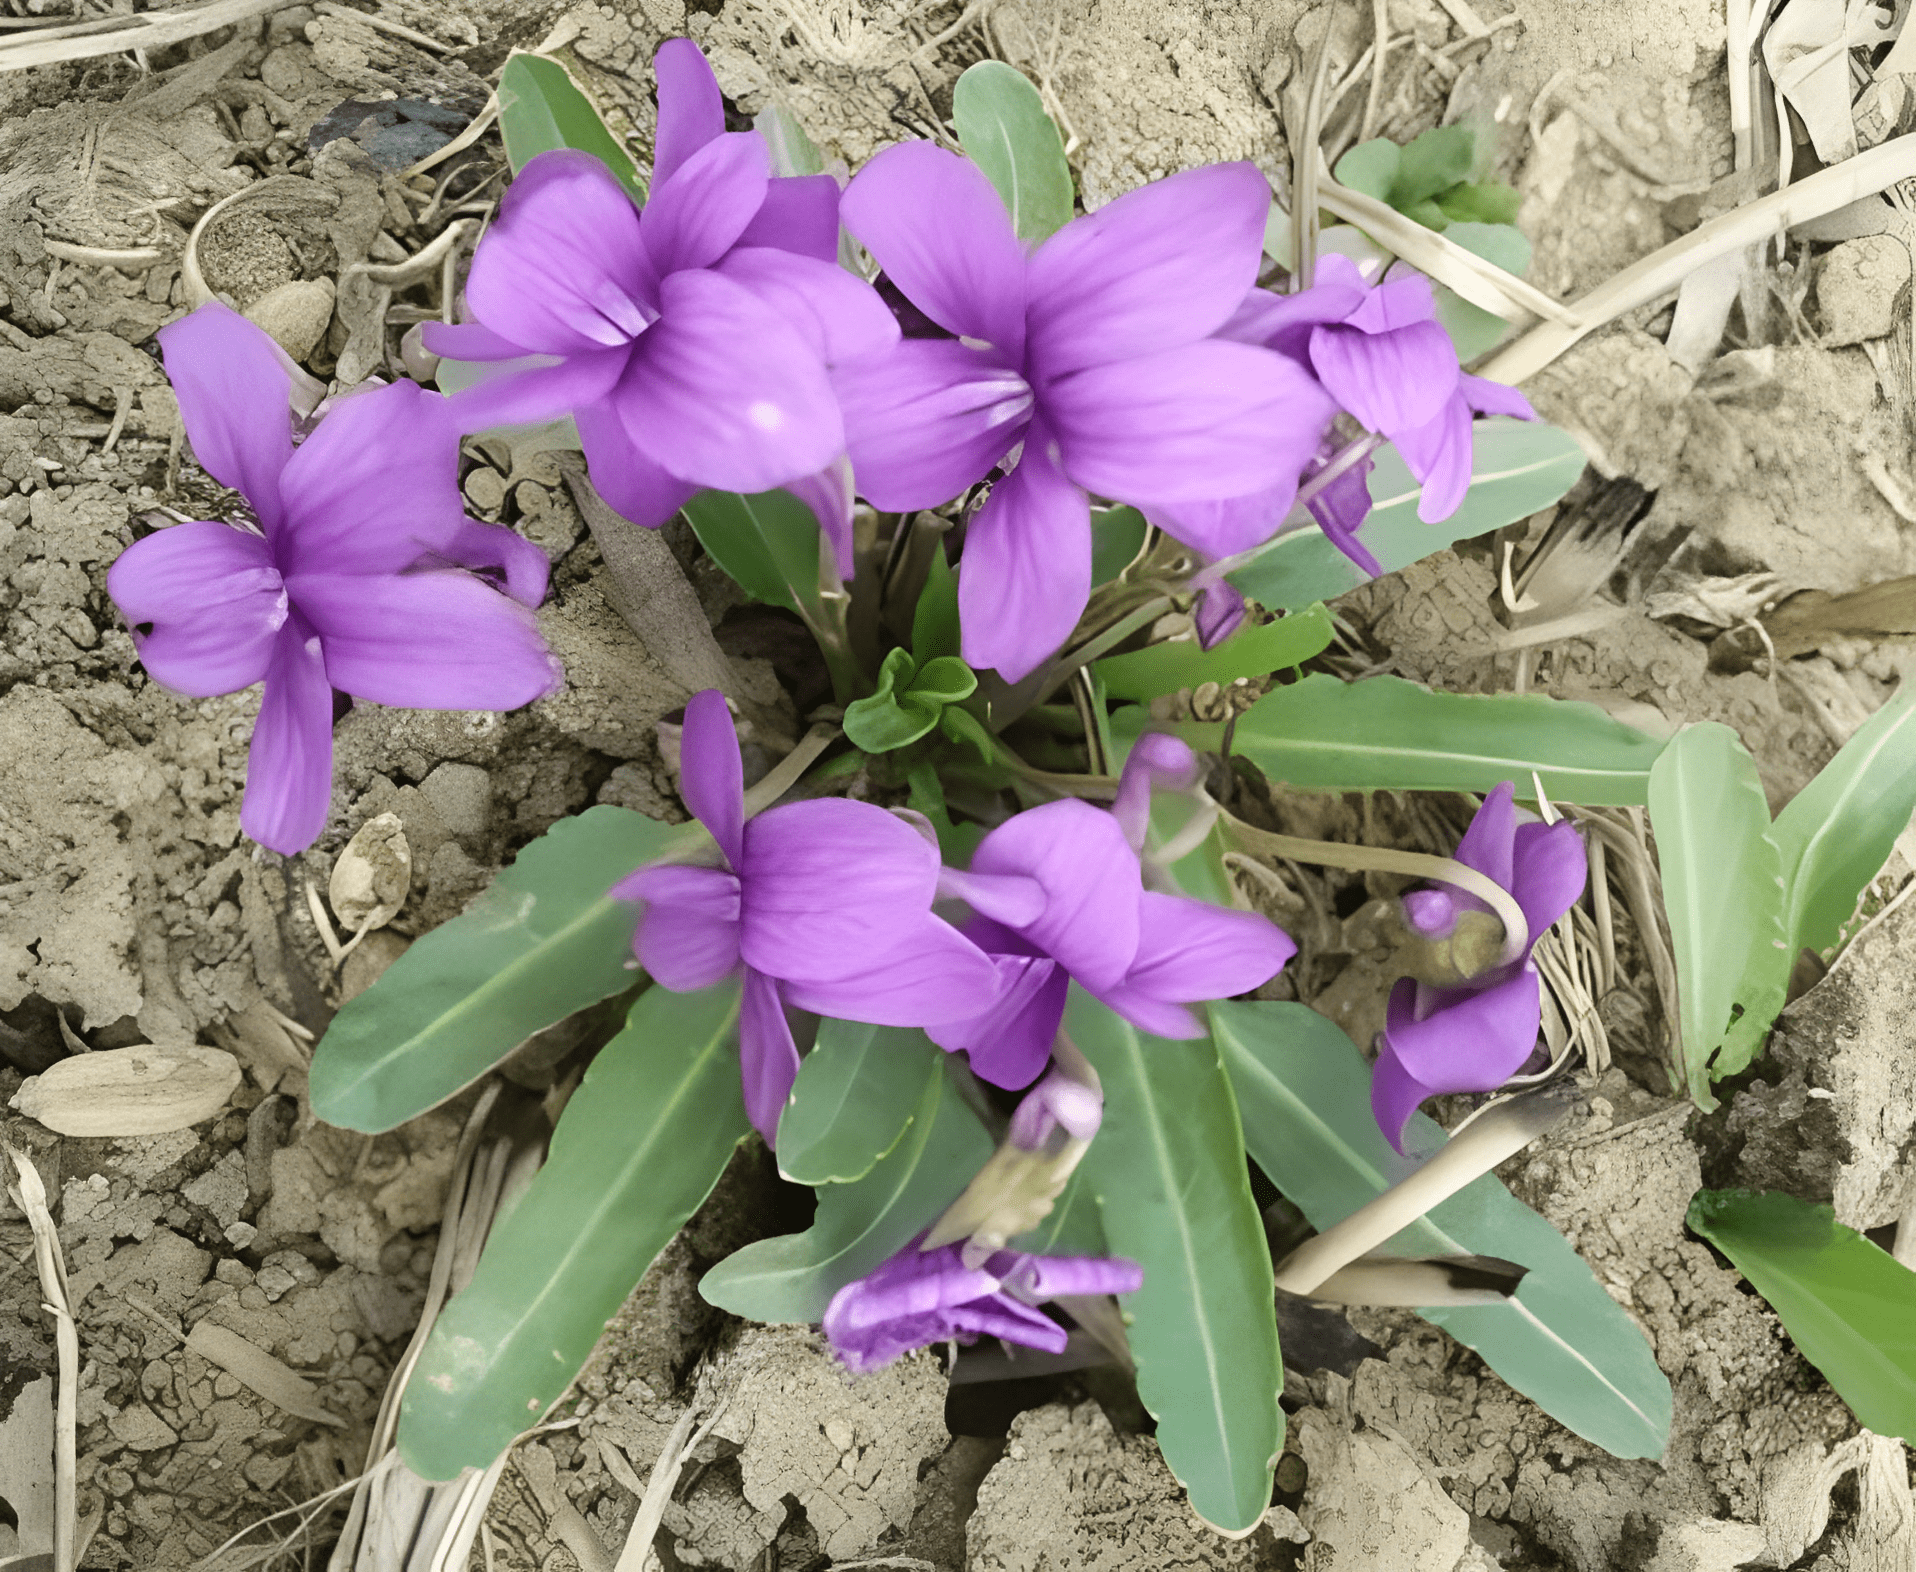 俗名是腹泻草,1年开1次紫色花,万万意料不到珍贵,记得爱惜